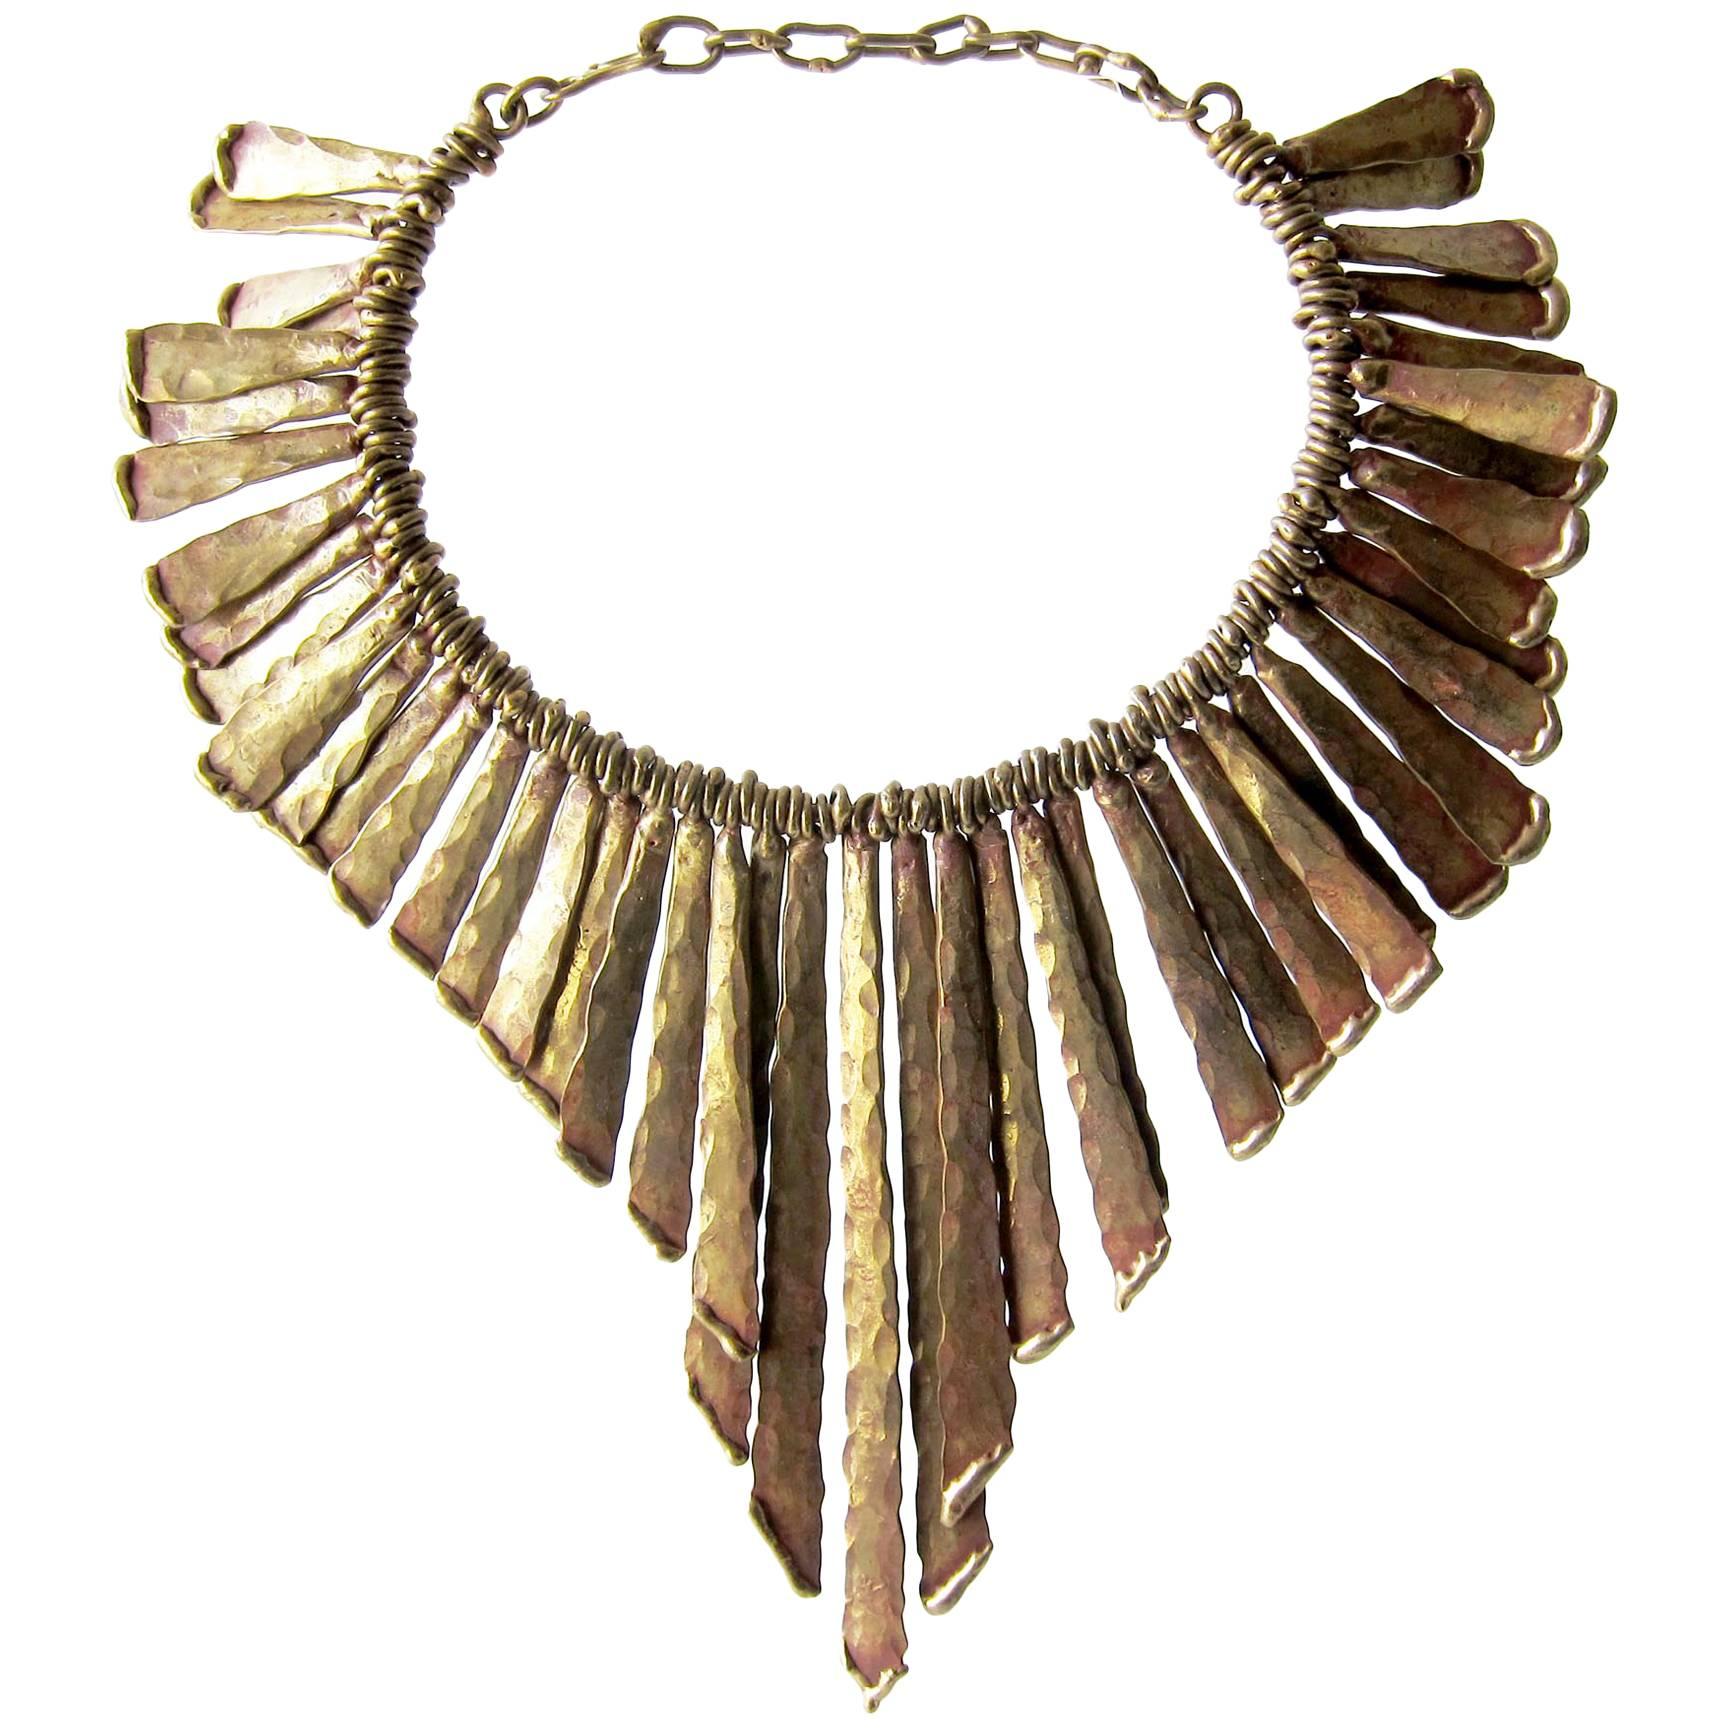 Pal Kepenyes Bronze Fringe Brutalist Necklace